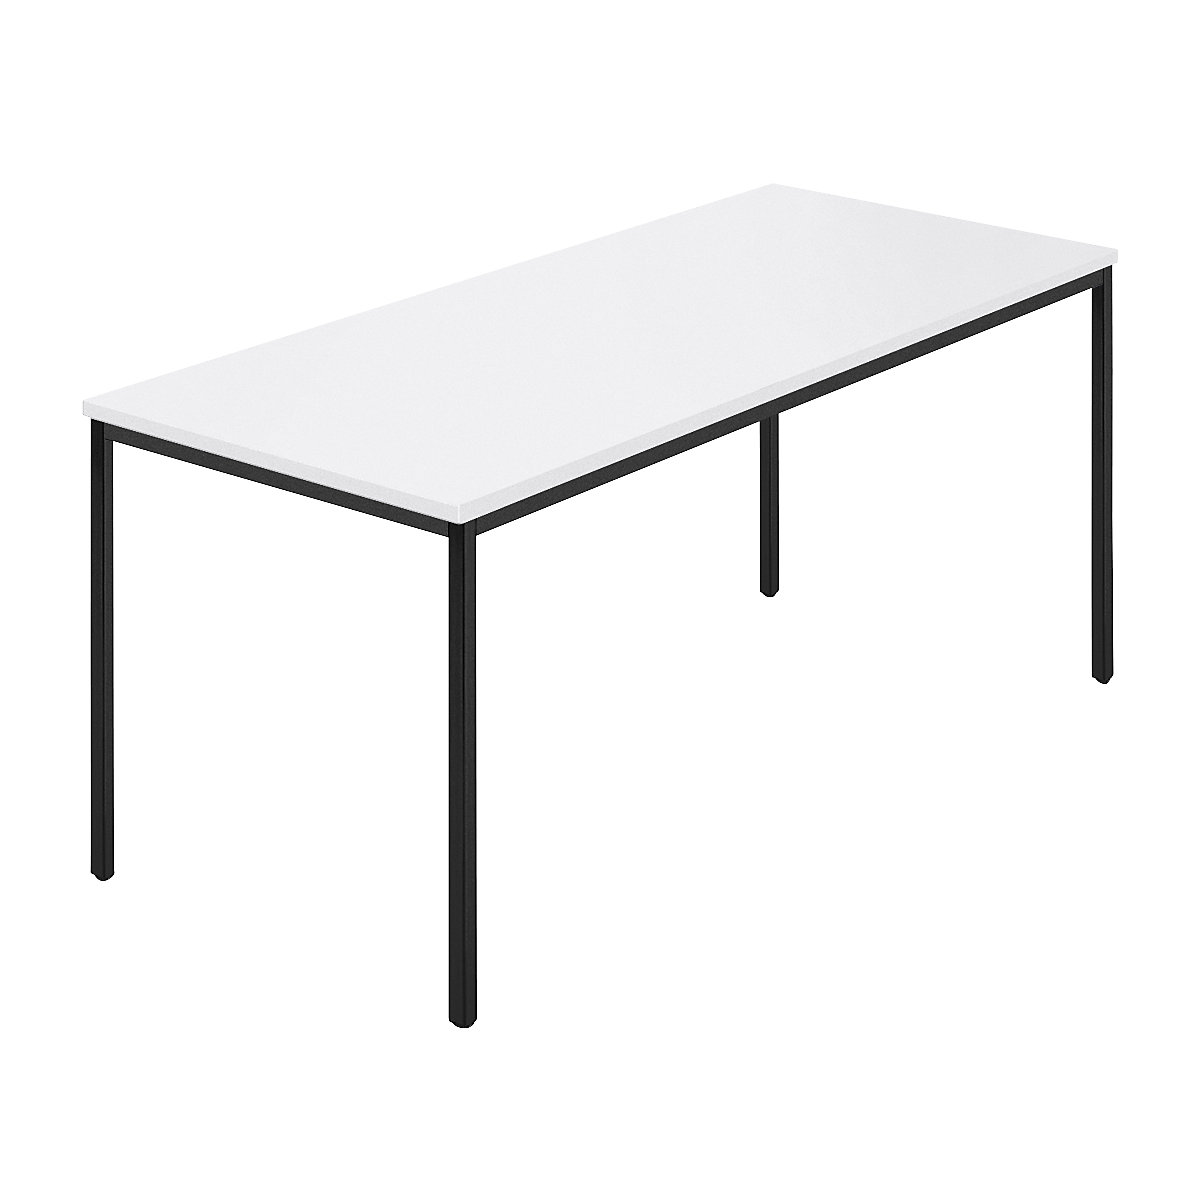 Rechthoekige tafel, vierkante buis met coating, b x d = 1600 x 800 mm, wit / antracietkleurig-6